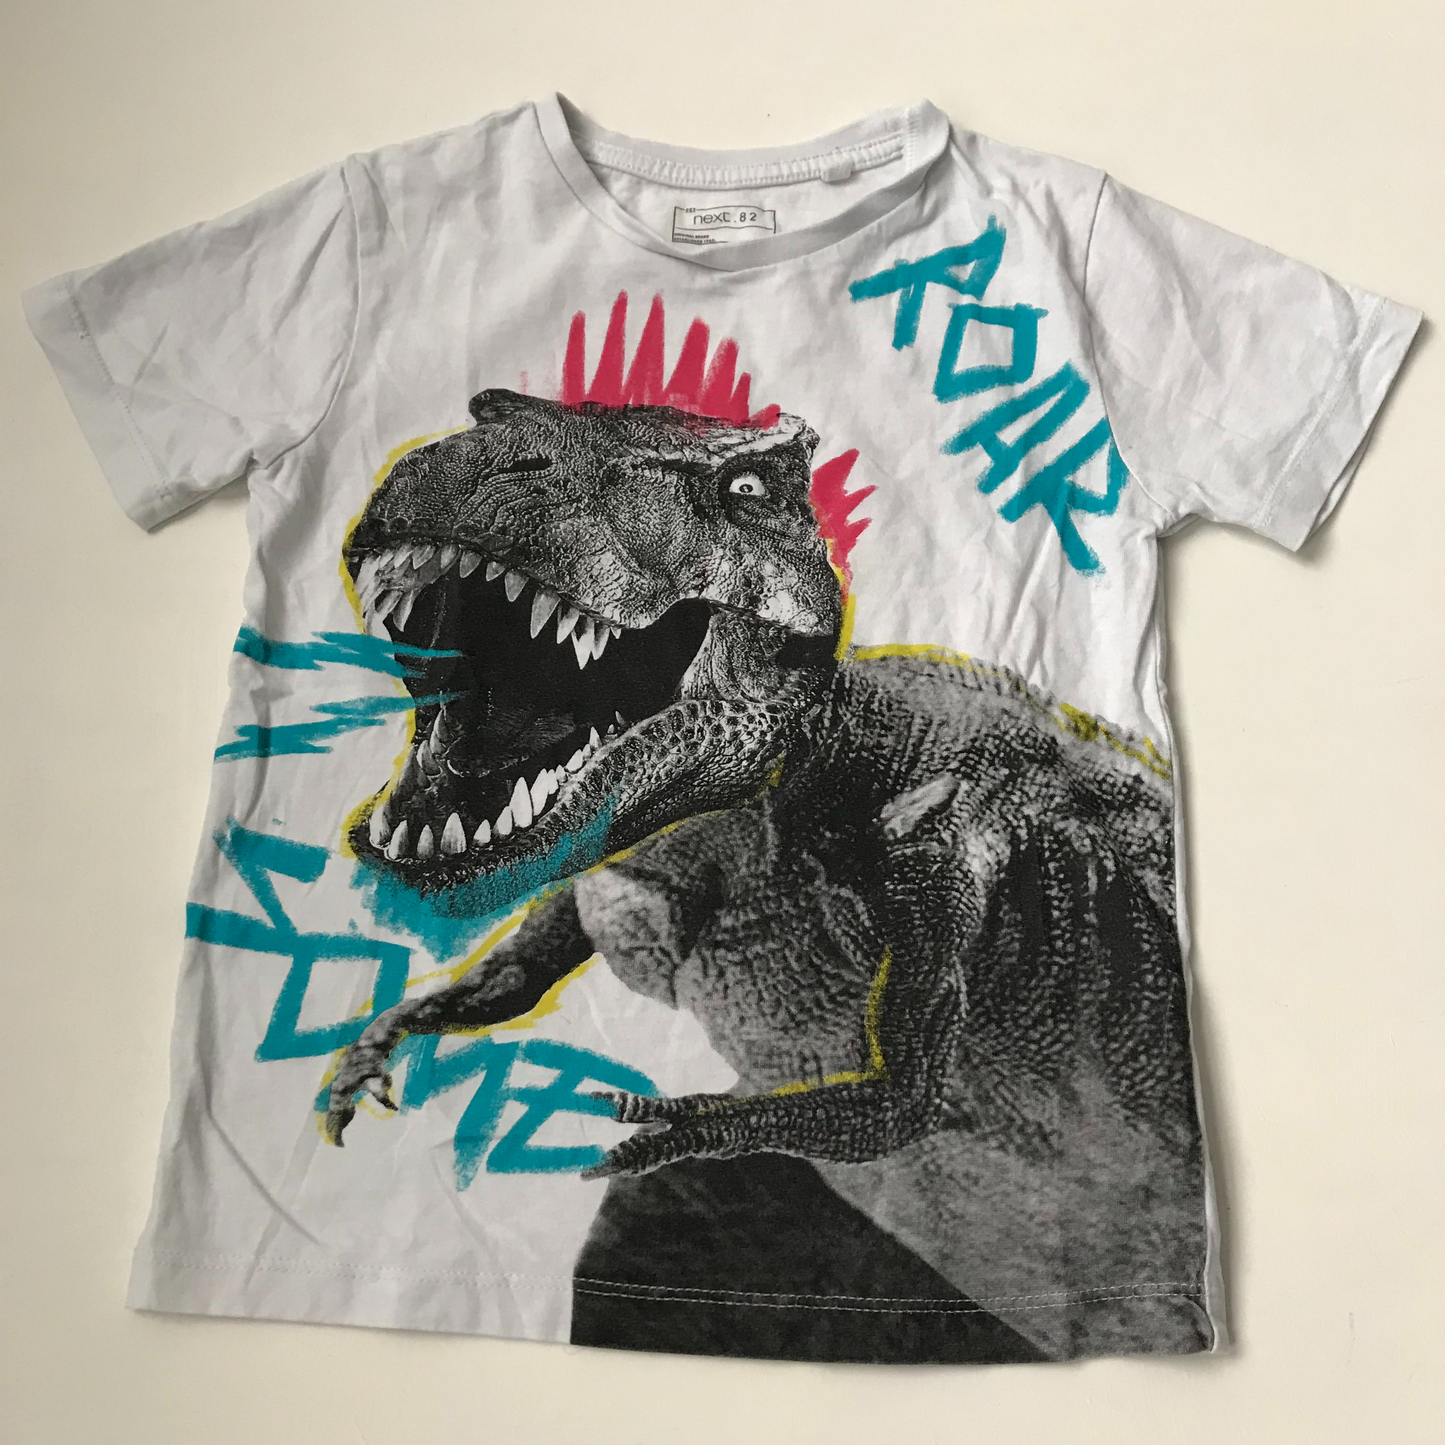 T-shirt - NEXT, Dinosaur - Age 5